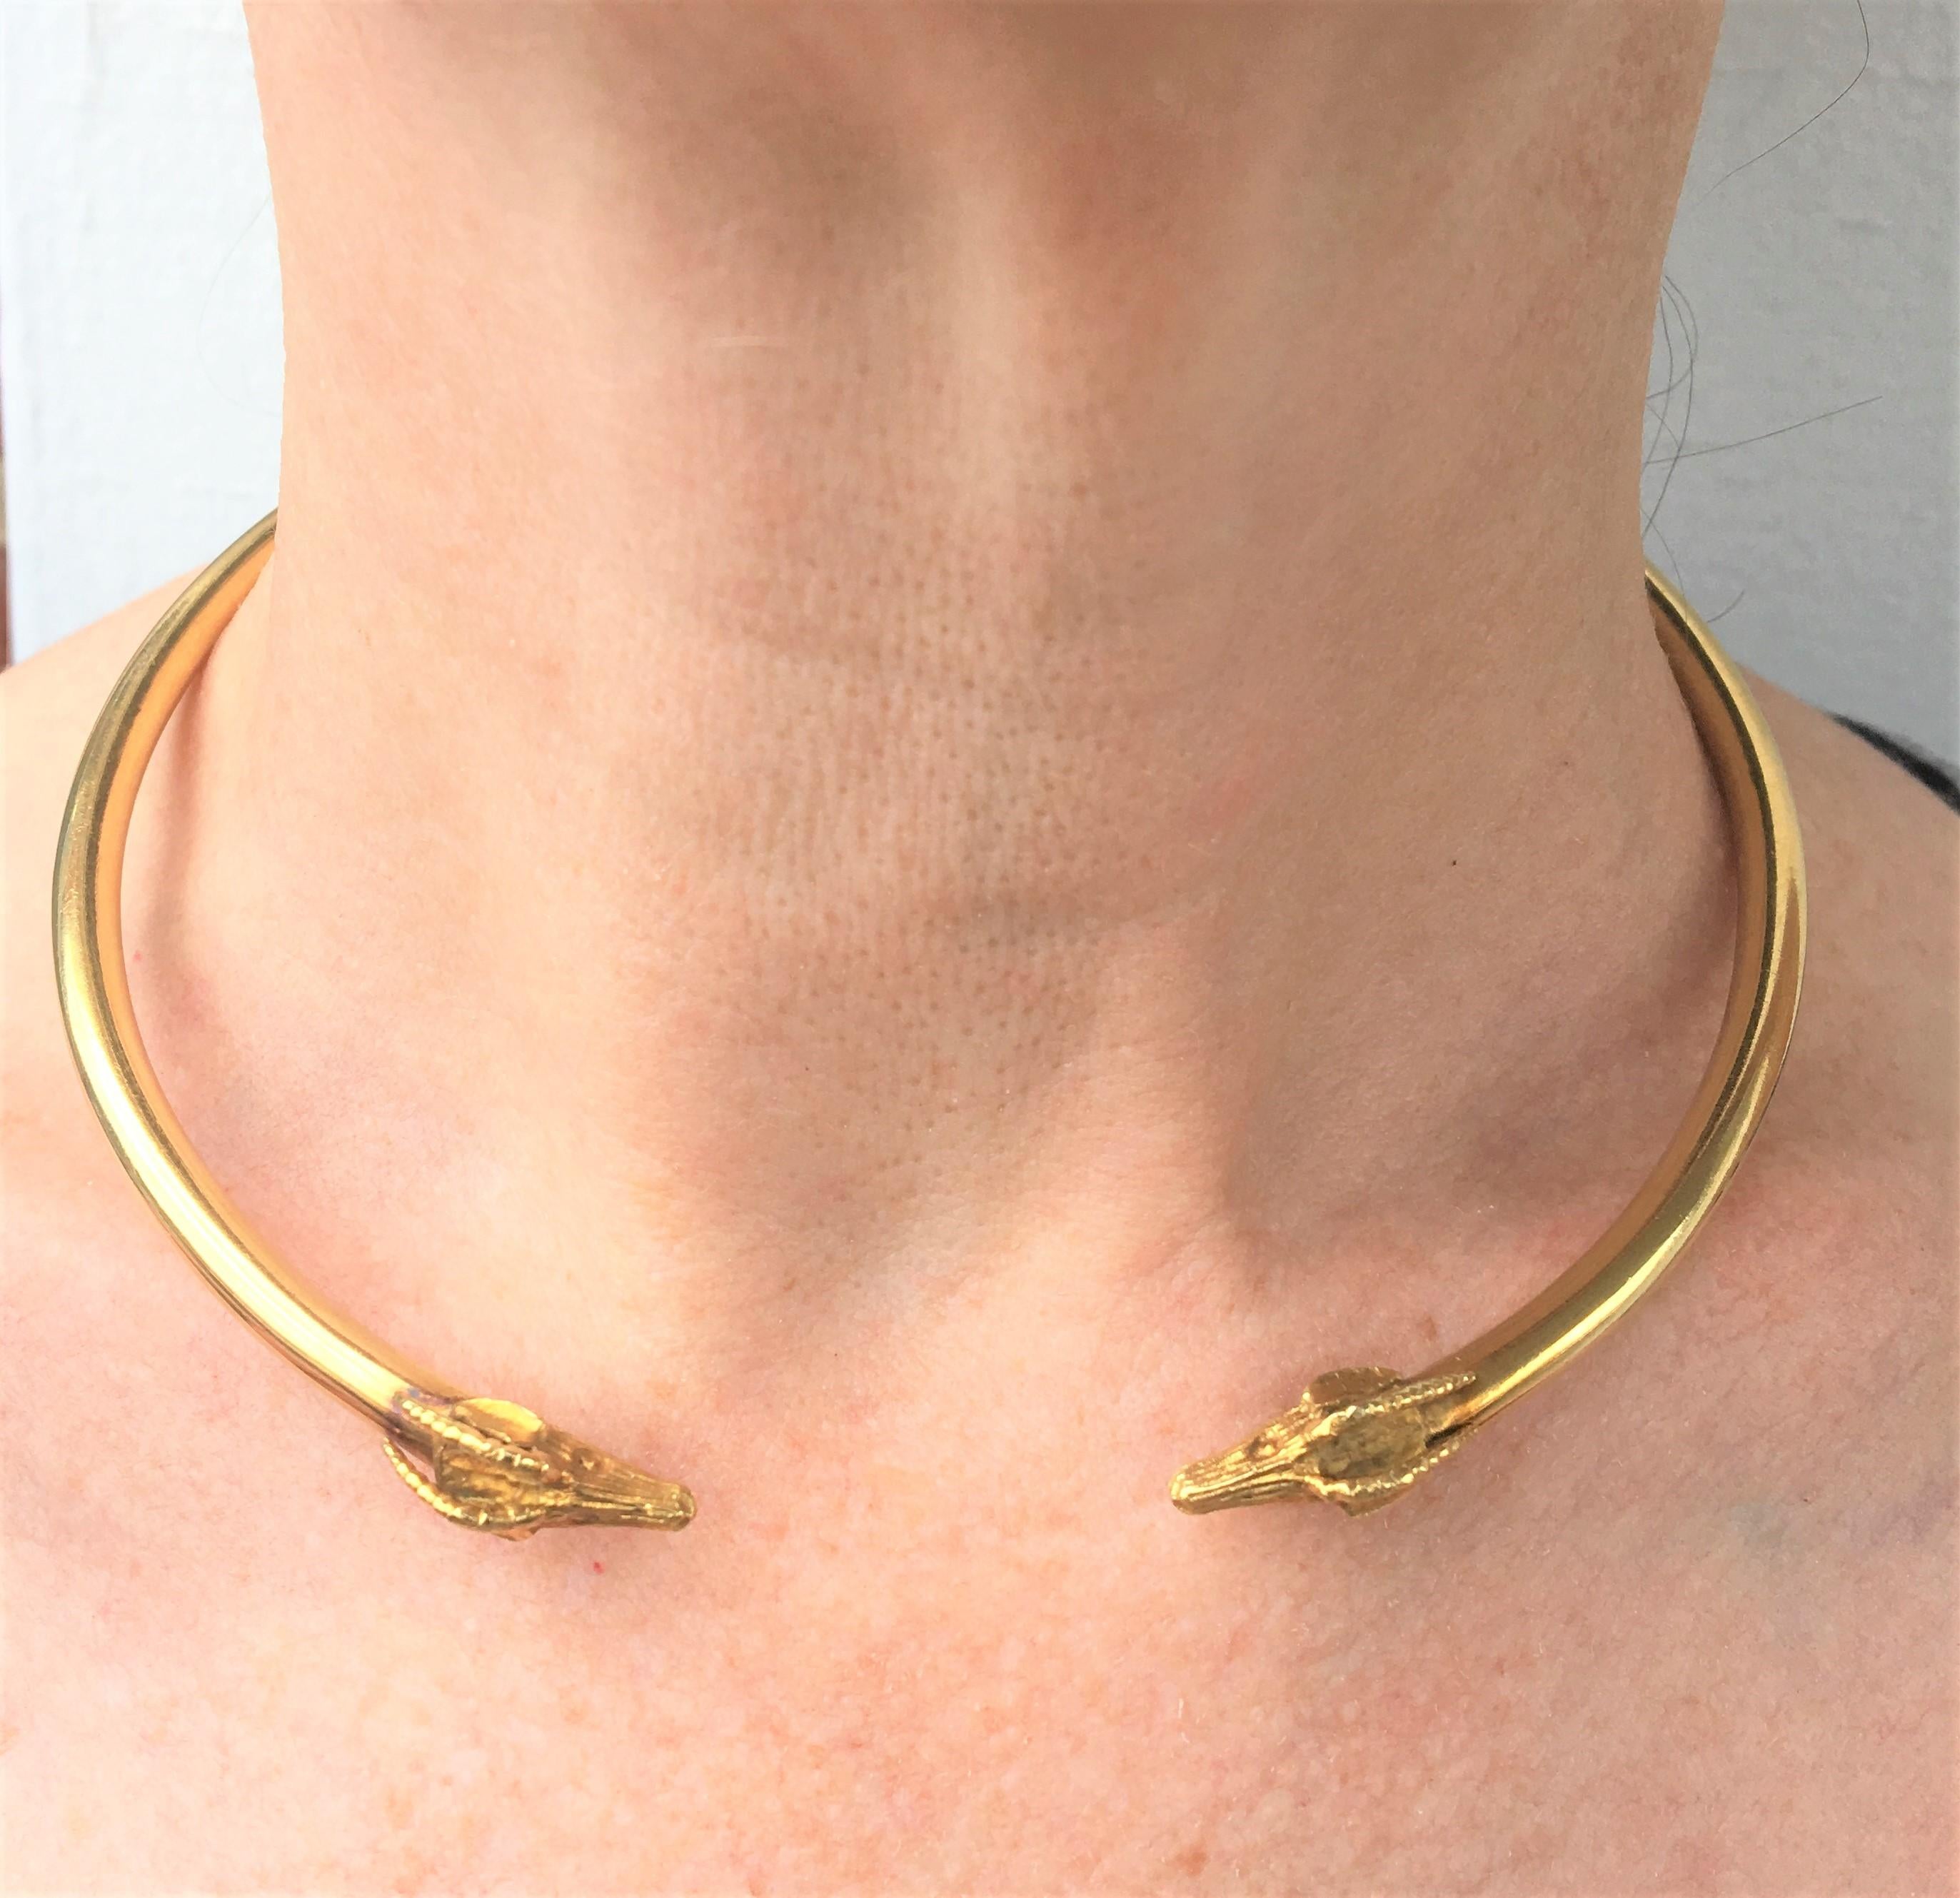 Estate Widderkopf-Halsband Halskette
18K Gelbgold
Ram Head an jeder Öffnung des Kragens
Das Halsband selbst ist etwa 4,5 mm dick
Lässt sich so weit öffnen, dass man ihn um den Hals legen kann
Halsband Länge
Ungefähr 4,5 Zoll Durchmesser, ungefähr